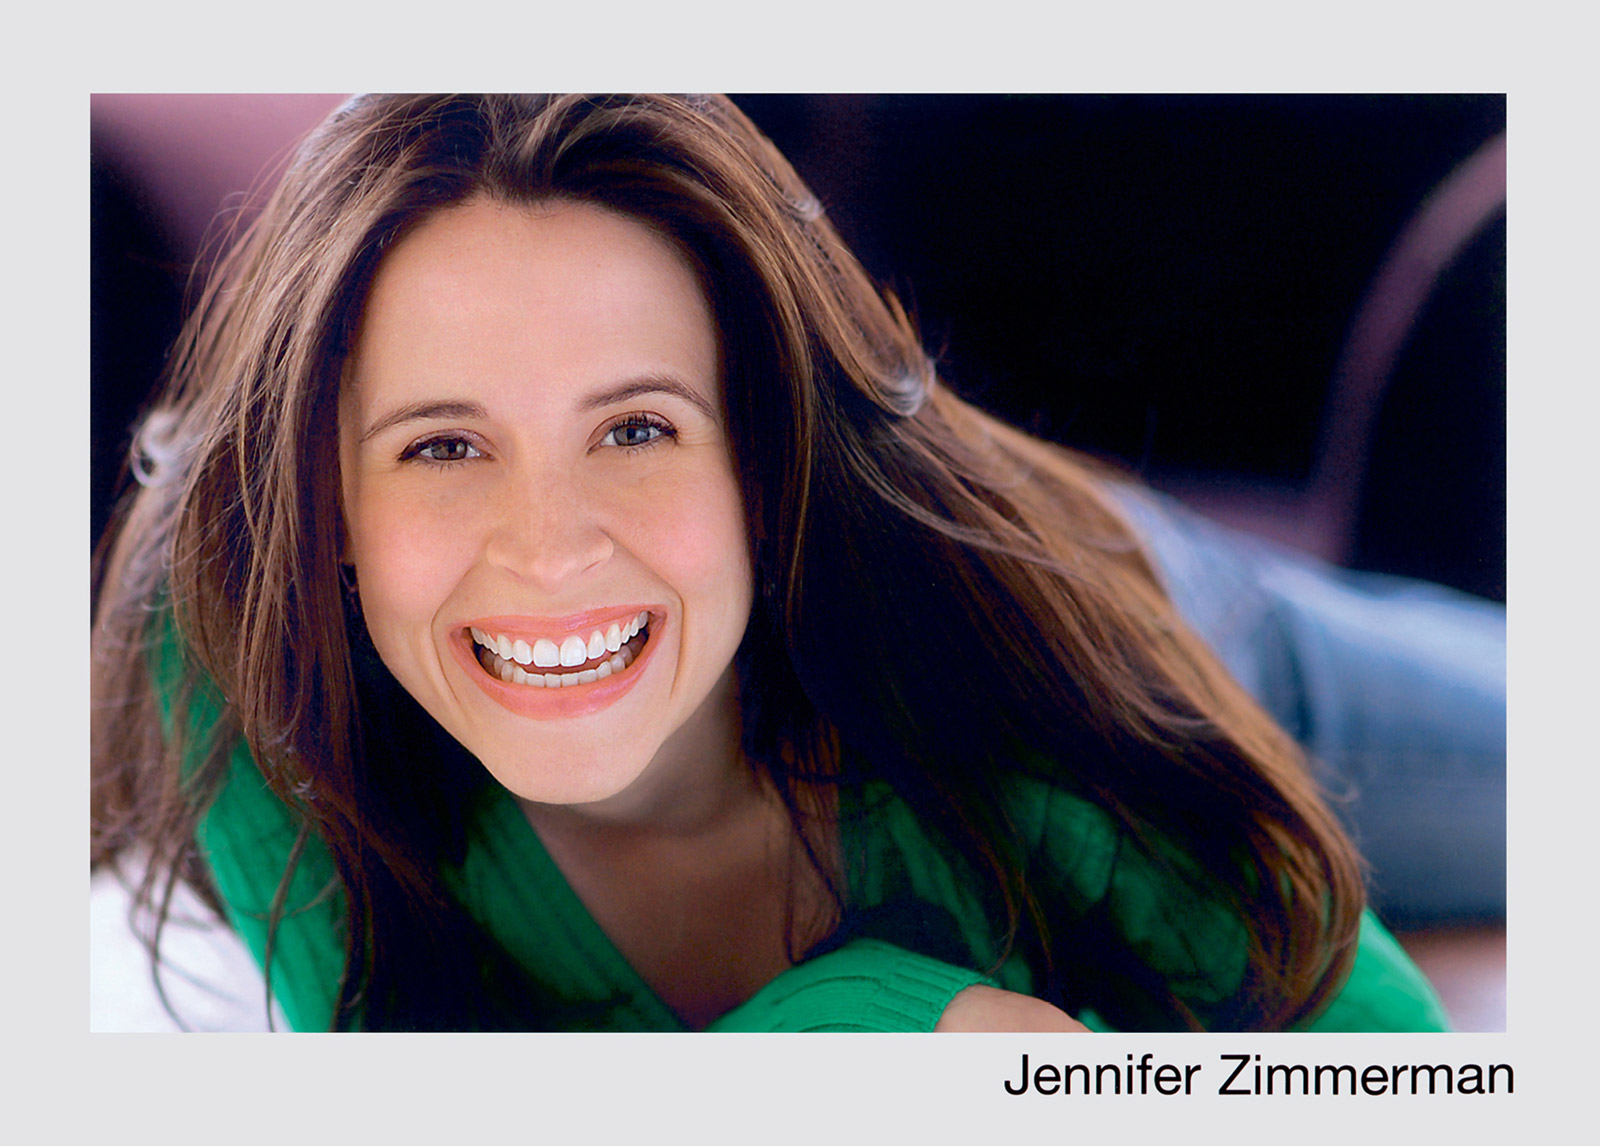 A headshot of Jennifer Zimmerman.